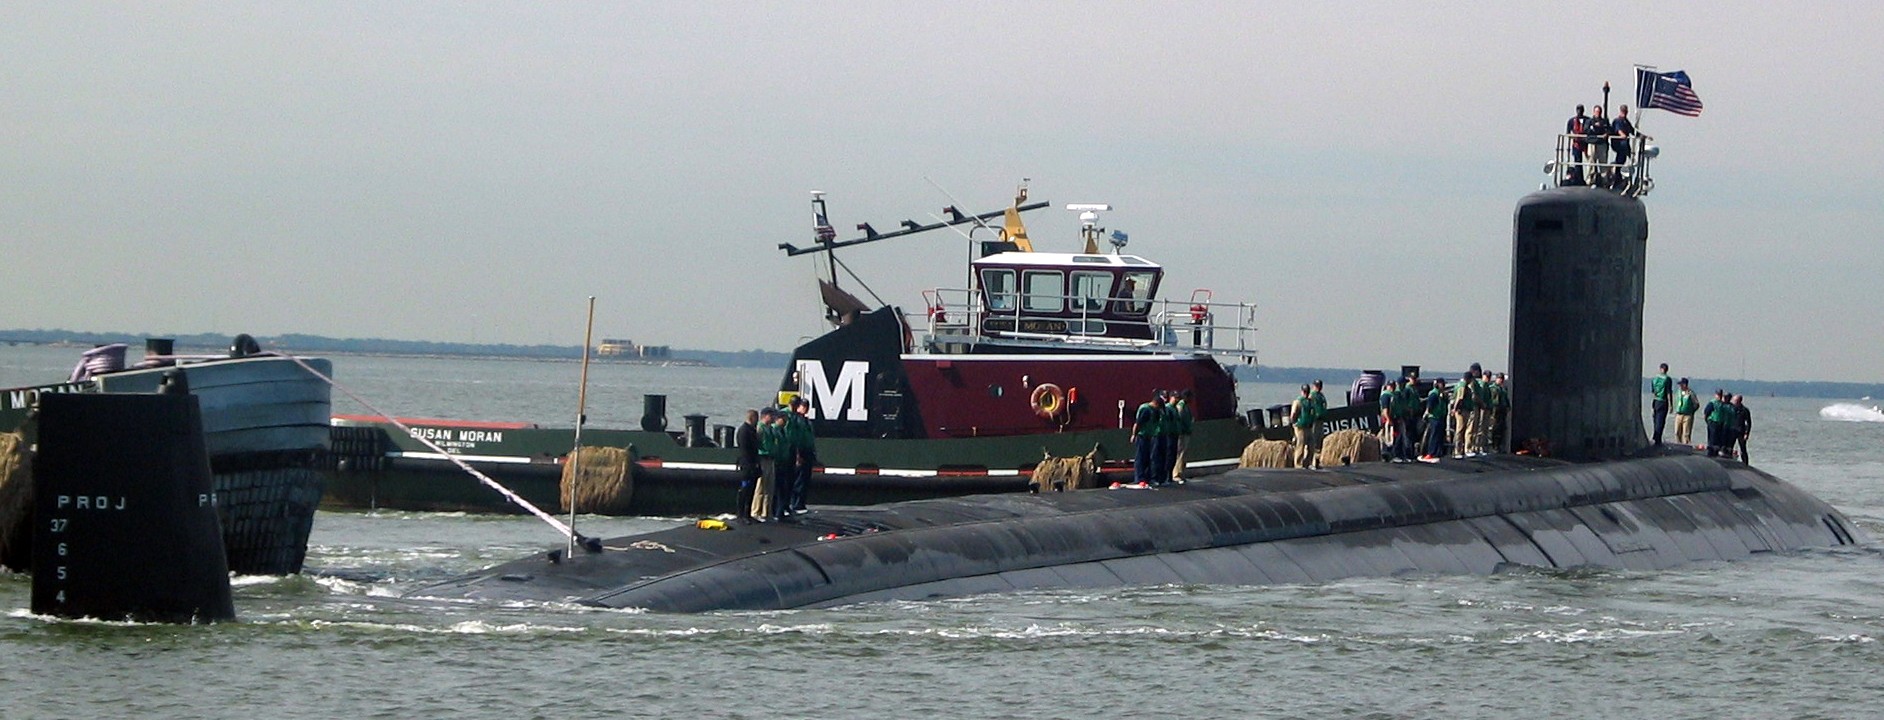 ssn-774 uss virginia attack submarine navy 2004 33